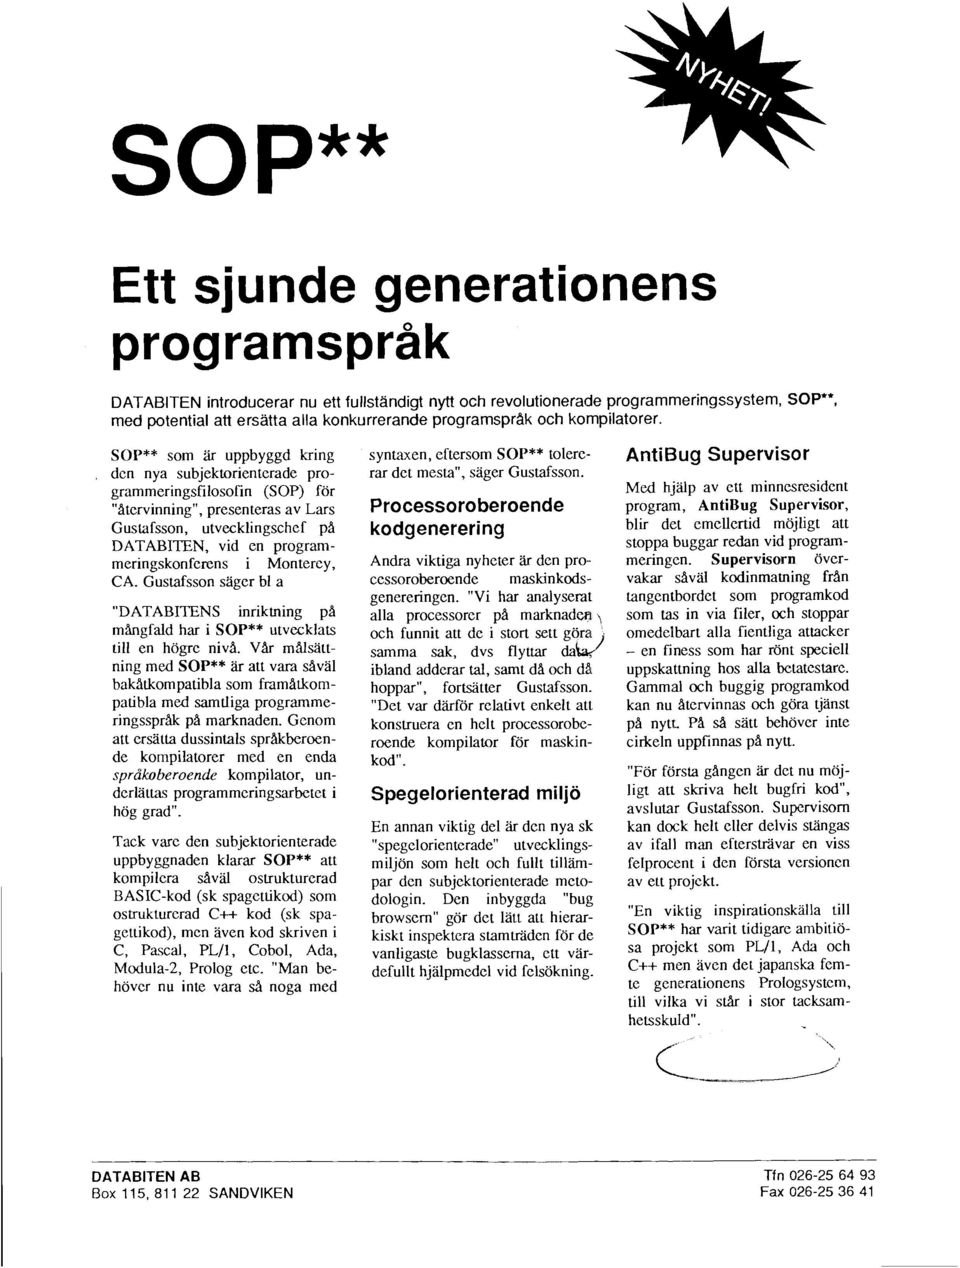 SOP** som är uppbyggd kring den nya subjektorienterade programmeringsfilosofin (SOP) för "Atervinning", presenteras av Lars Gustafsson, utvecklingschef pa DATABITEN, vid en programmeringskonferens i